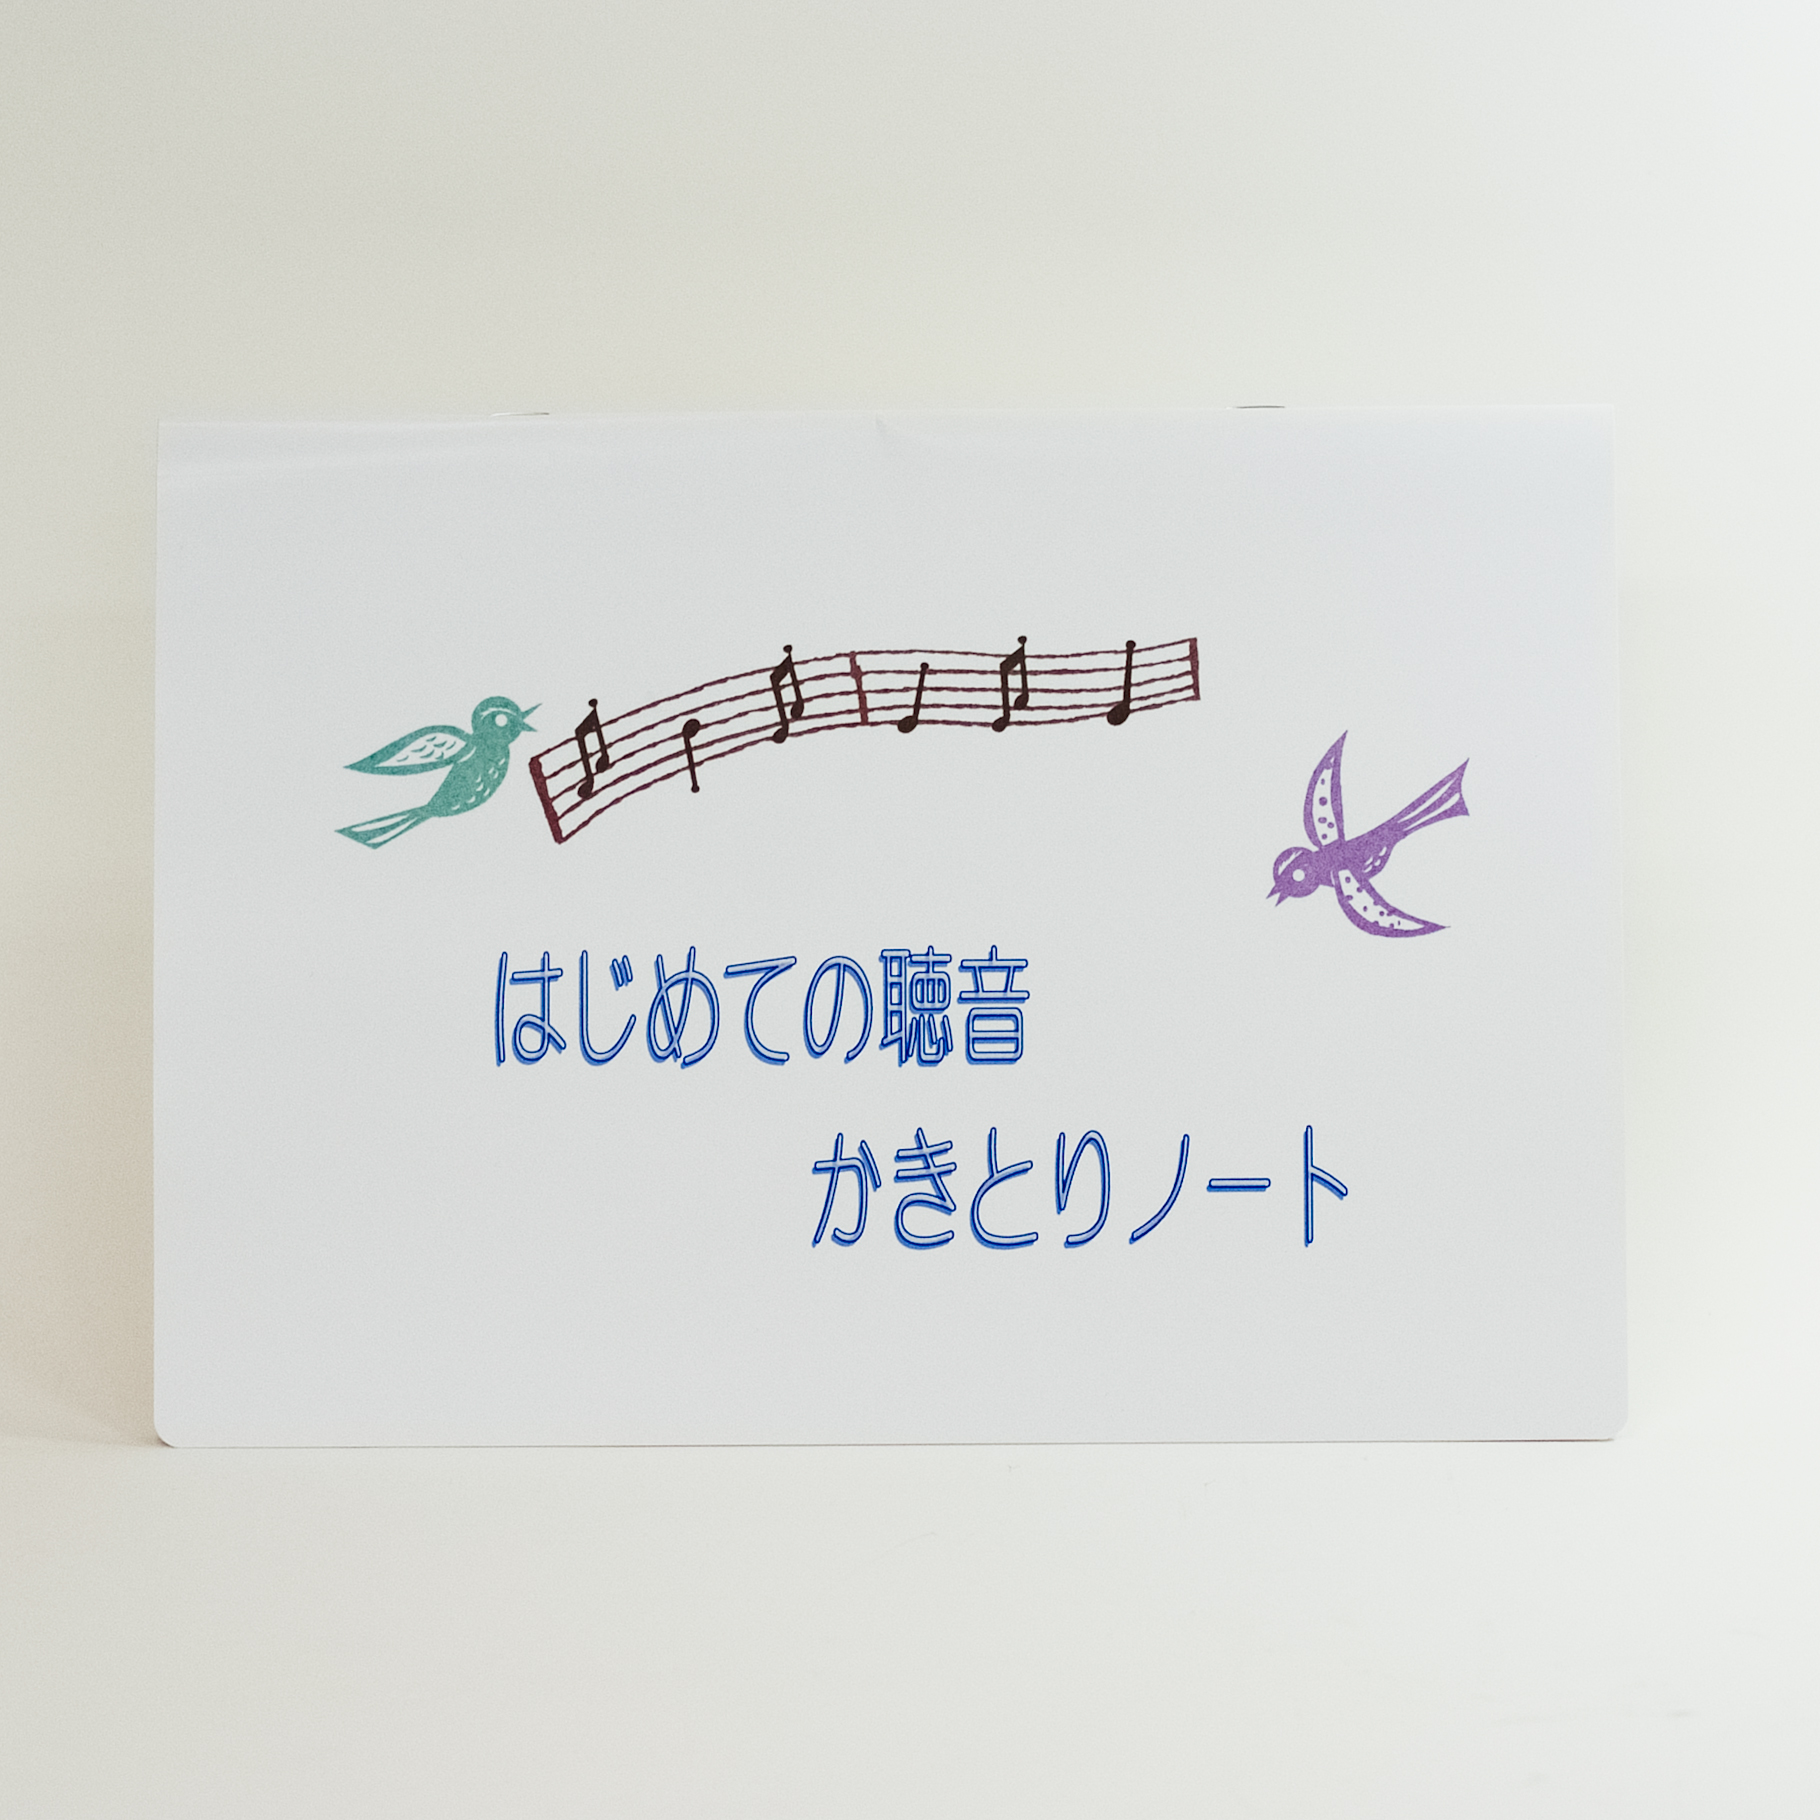 「江黒　真弓 様」製作のオリジナルノート